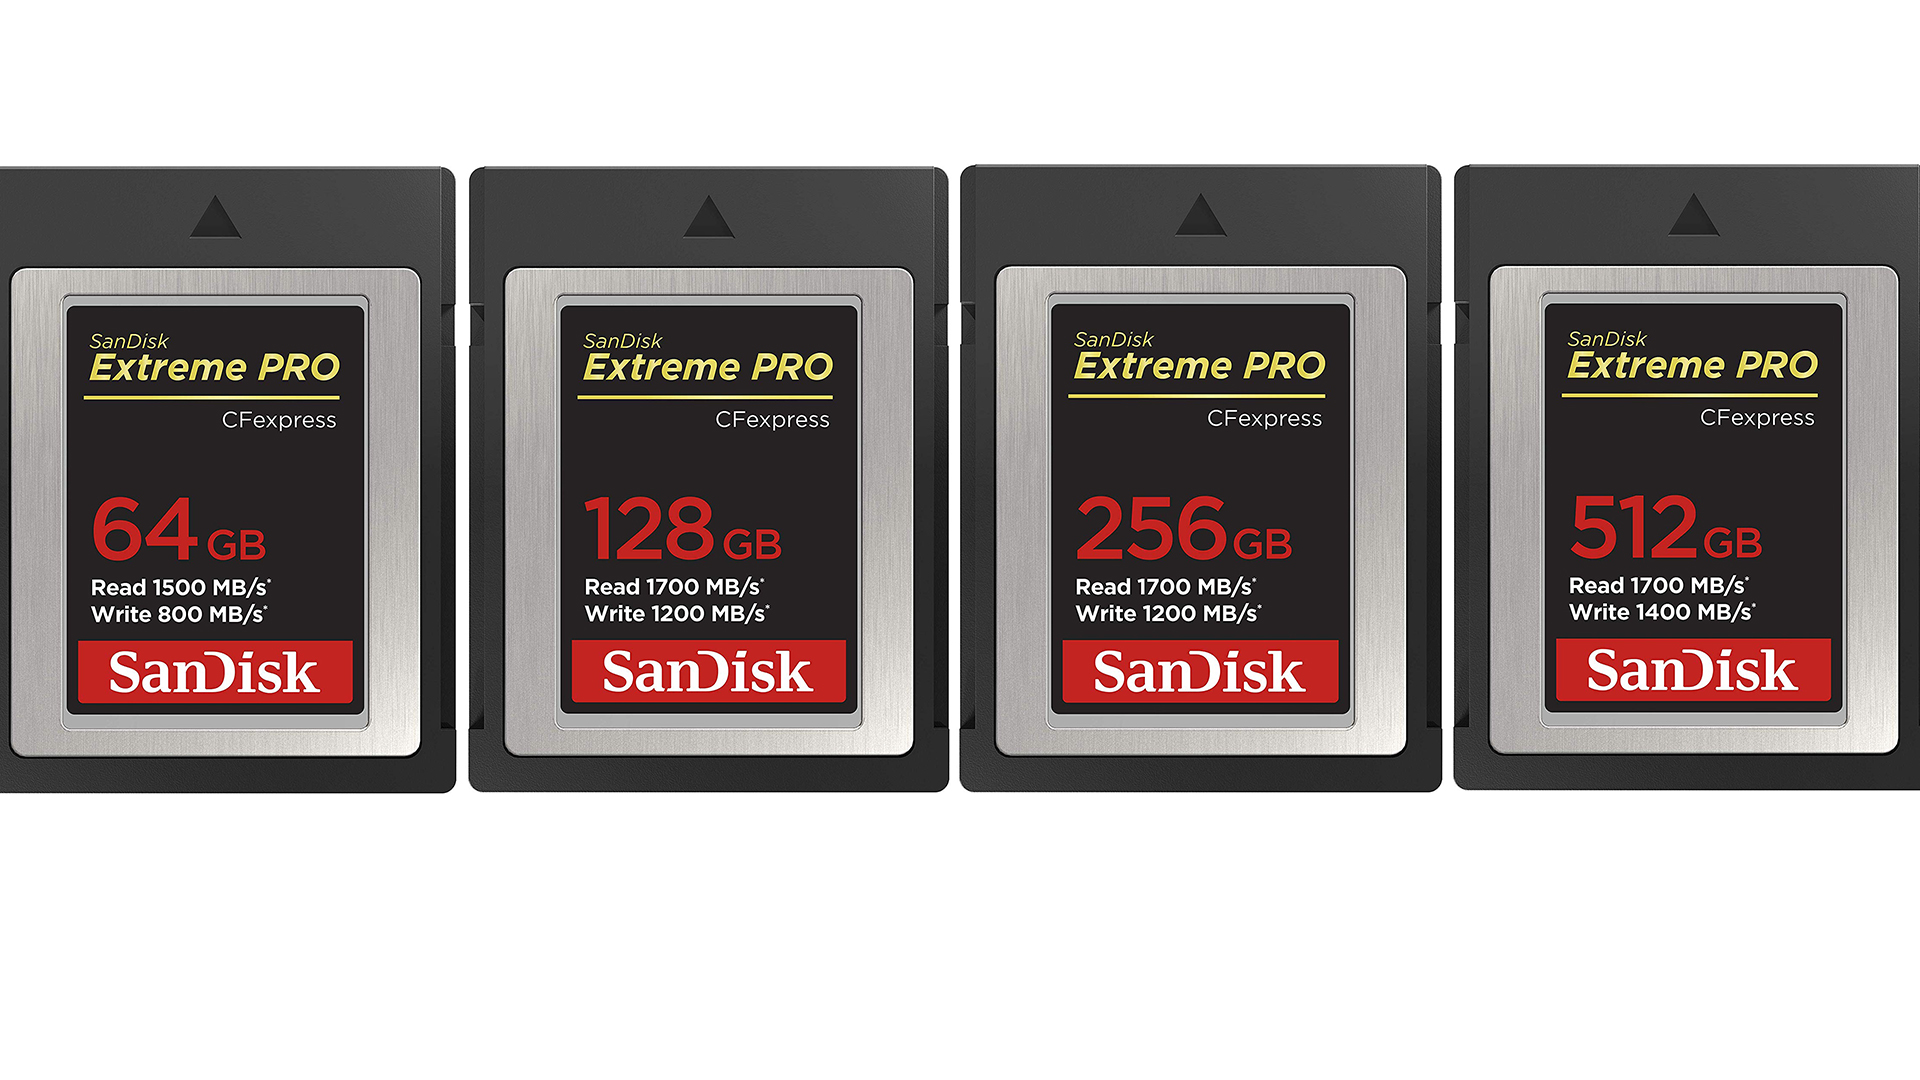 お店で人気の商品 SanDisk CFexpress Type B 128GB その他